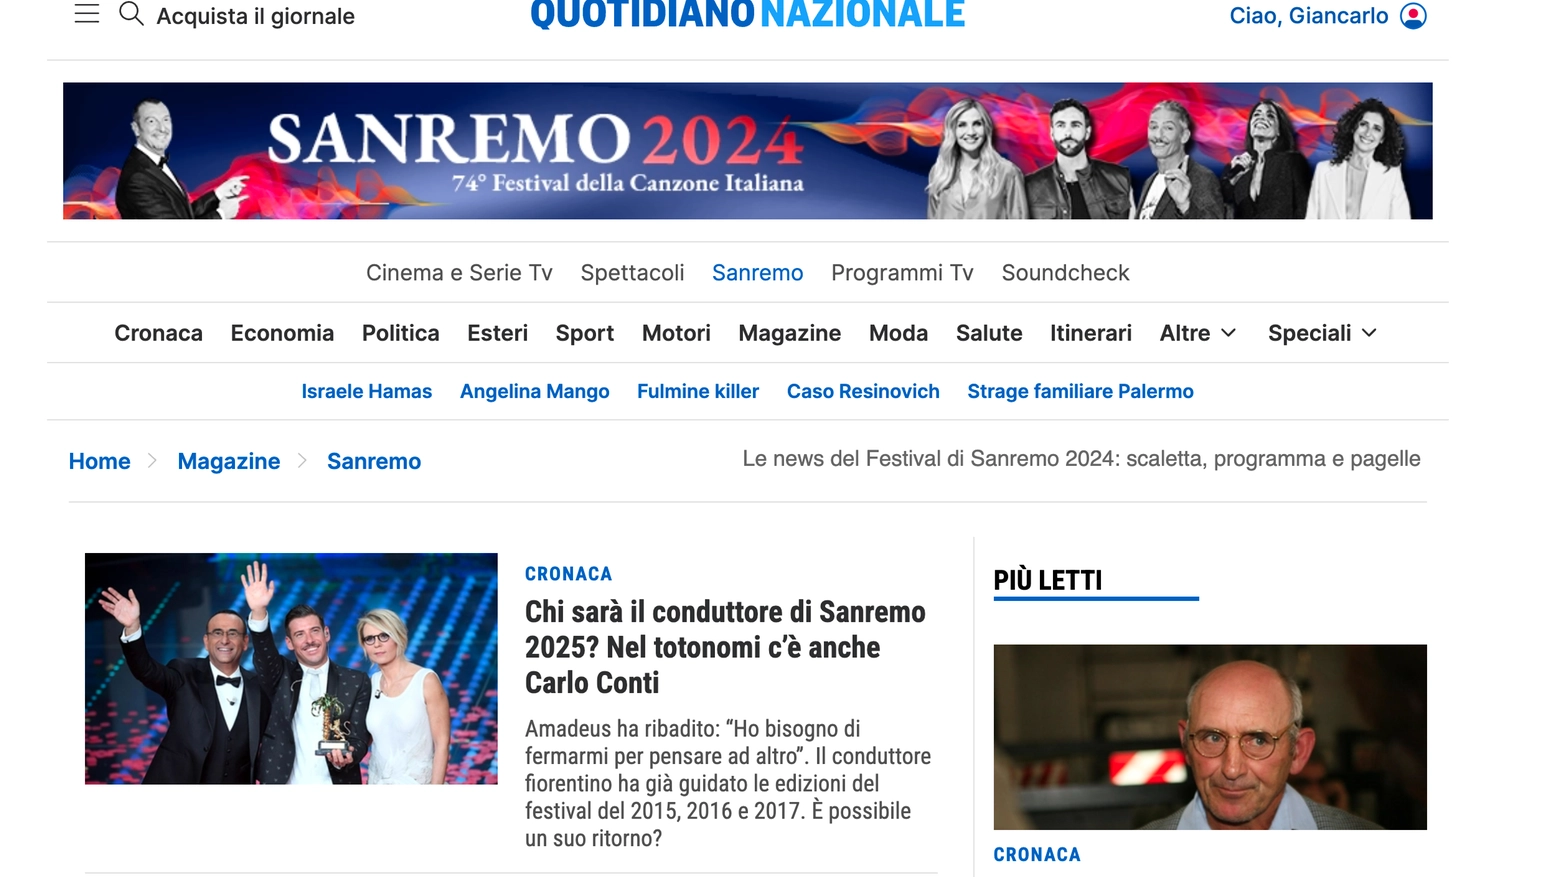 Lo speciale Sanremo su QN - Quotidiano Nazionale